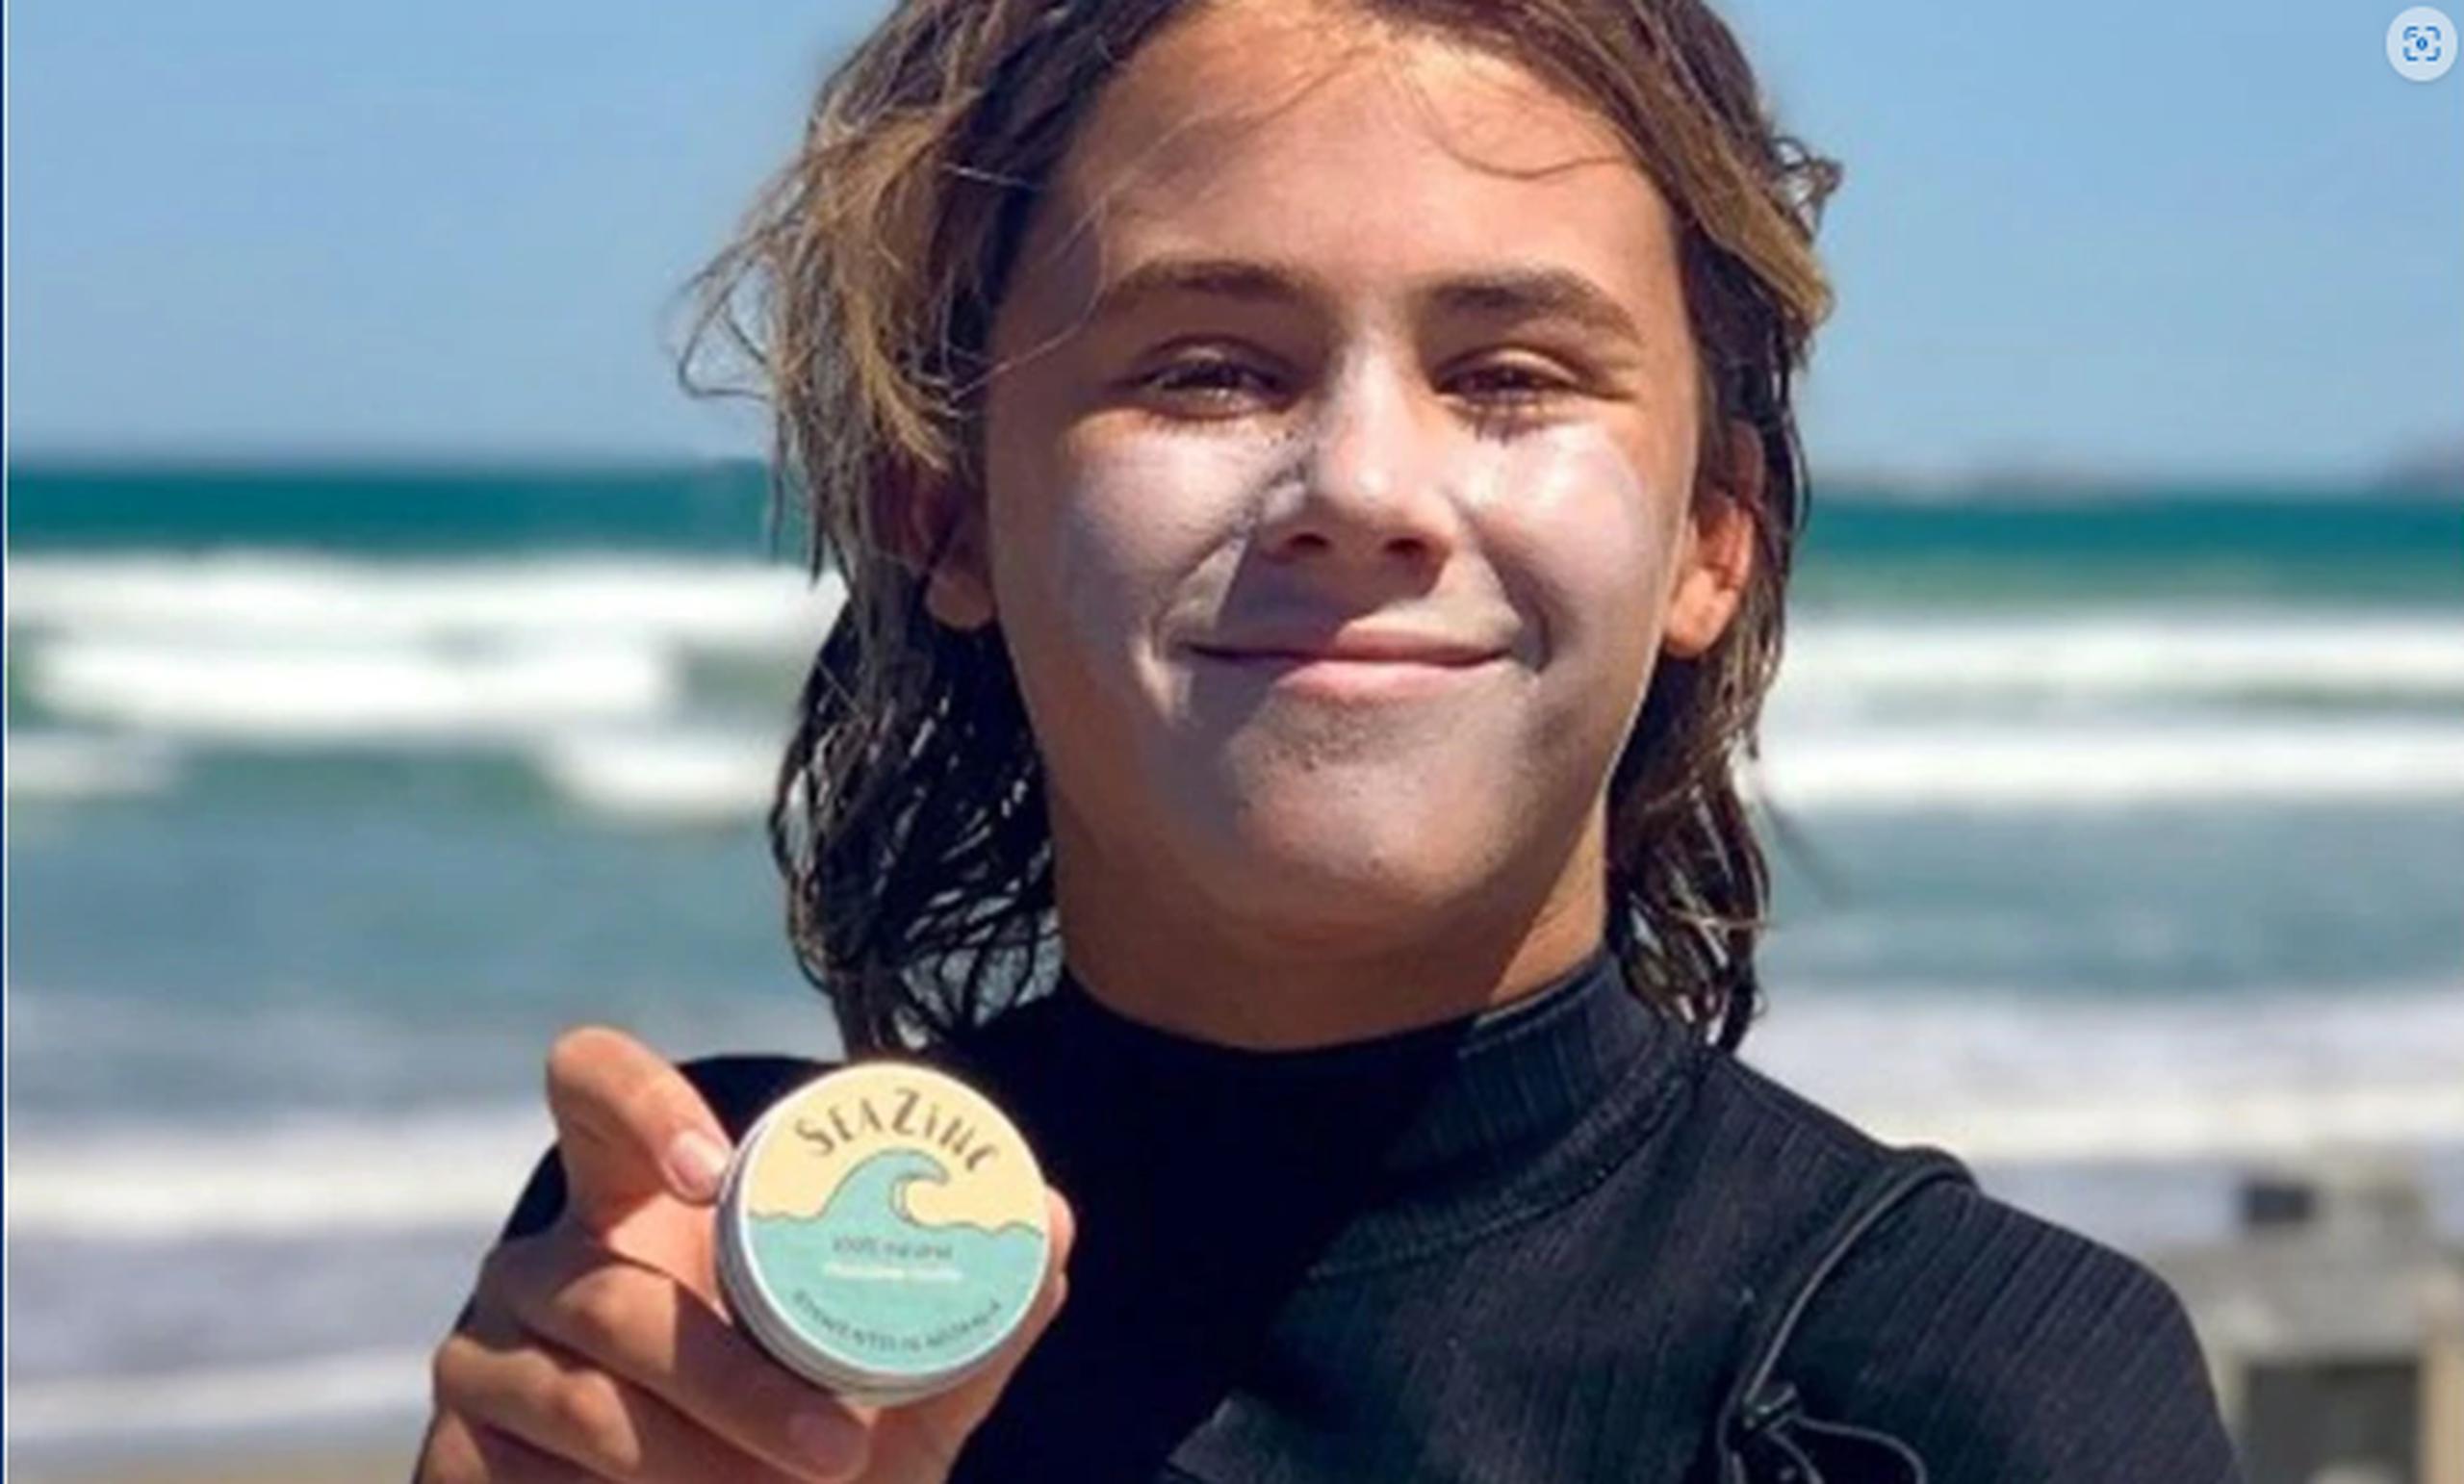 Con solo 15 años, Cowley, un surfista de tercera generación ya había conseguido ya reconocimiento en el Southern Surf Festival de Australia.